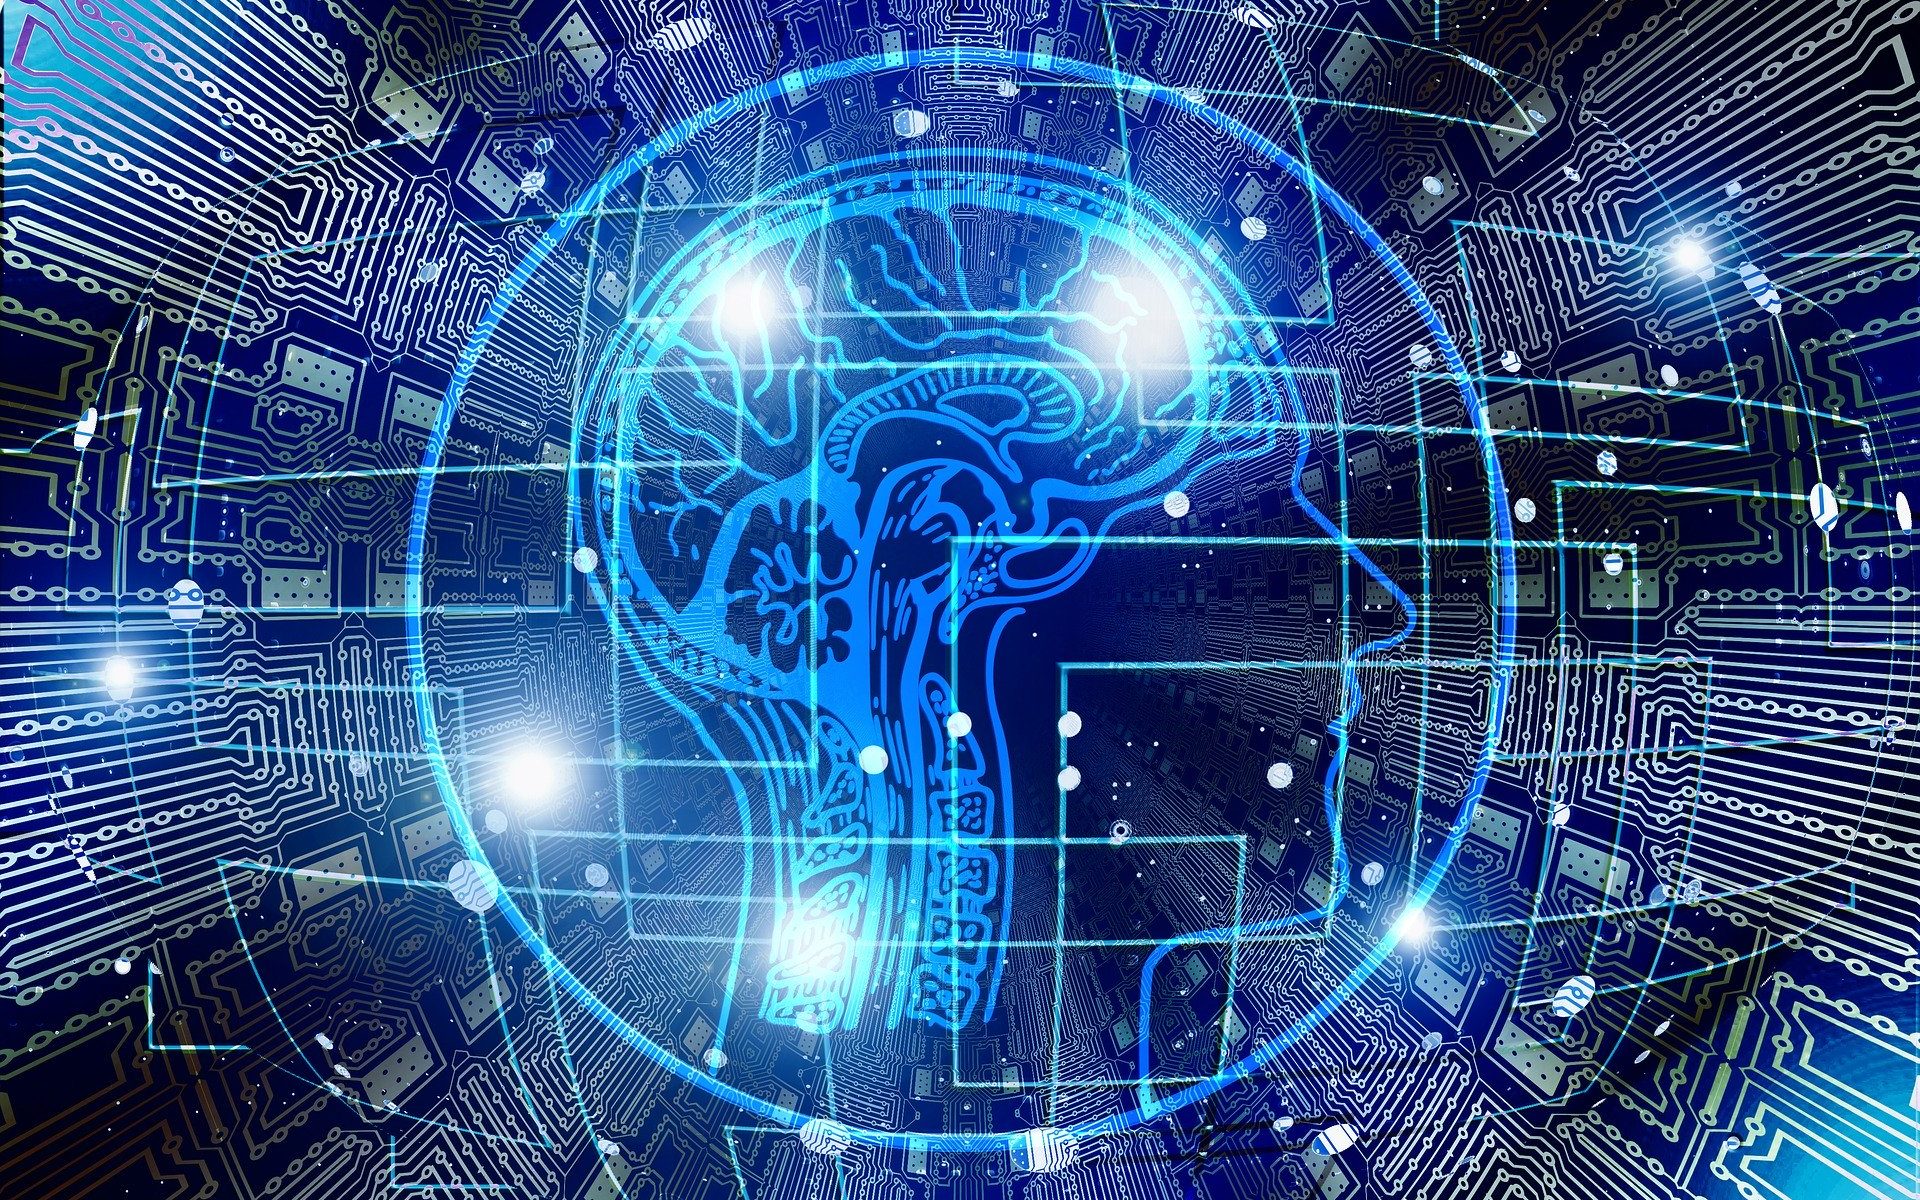 Mesterséges intelligencia témájú grafika: emberi agy, körülötte áramkörre emlékeztető elemekkel.